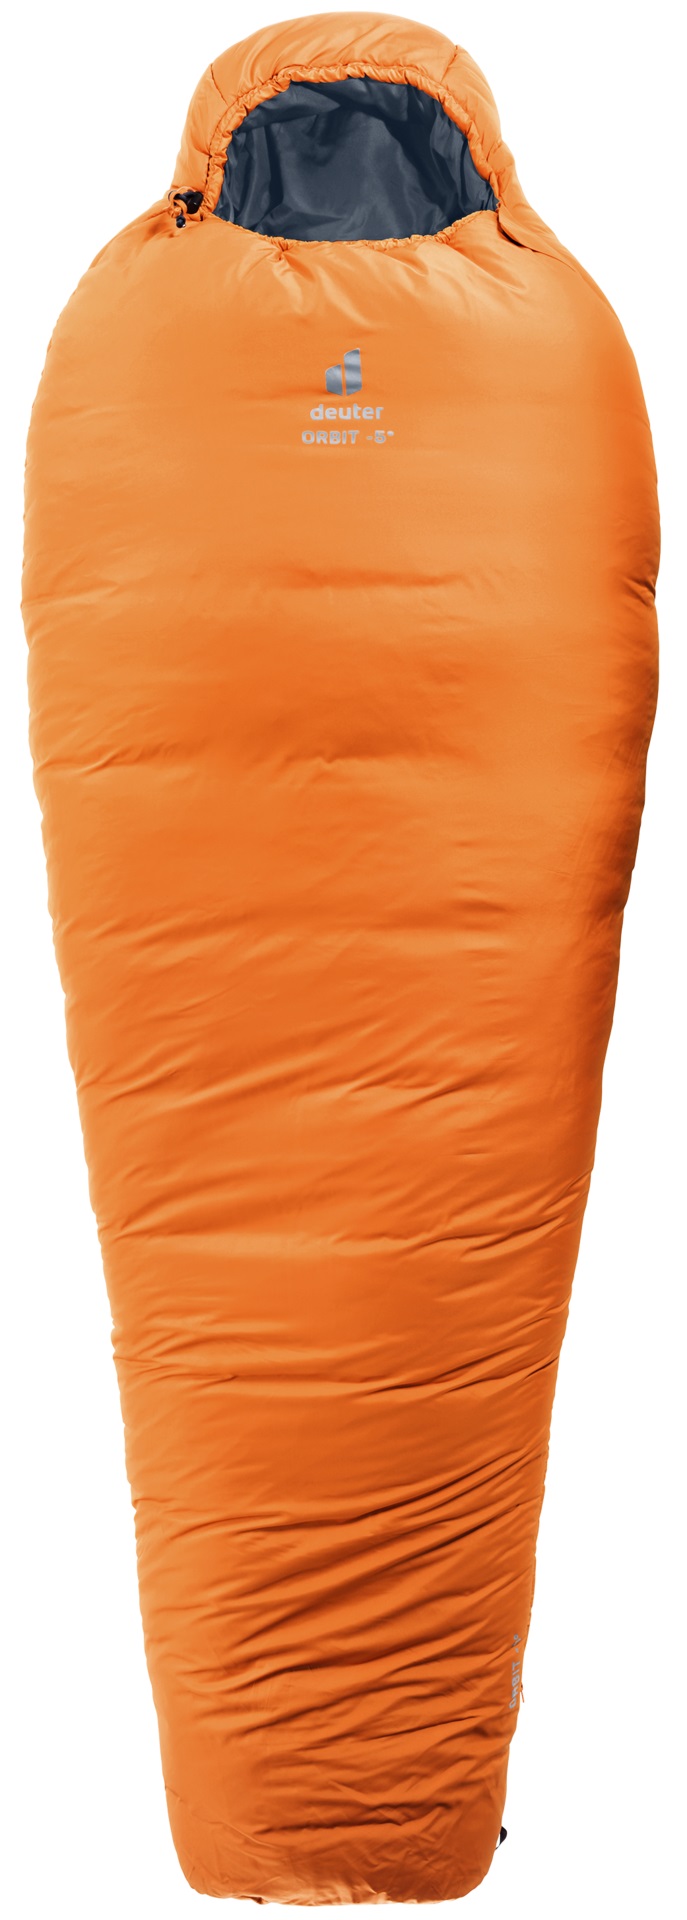 Спальный мешок Deuter Orbit Reg mandarine/ink, правый